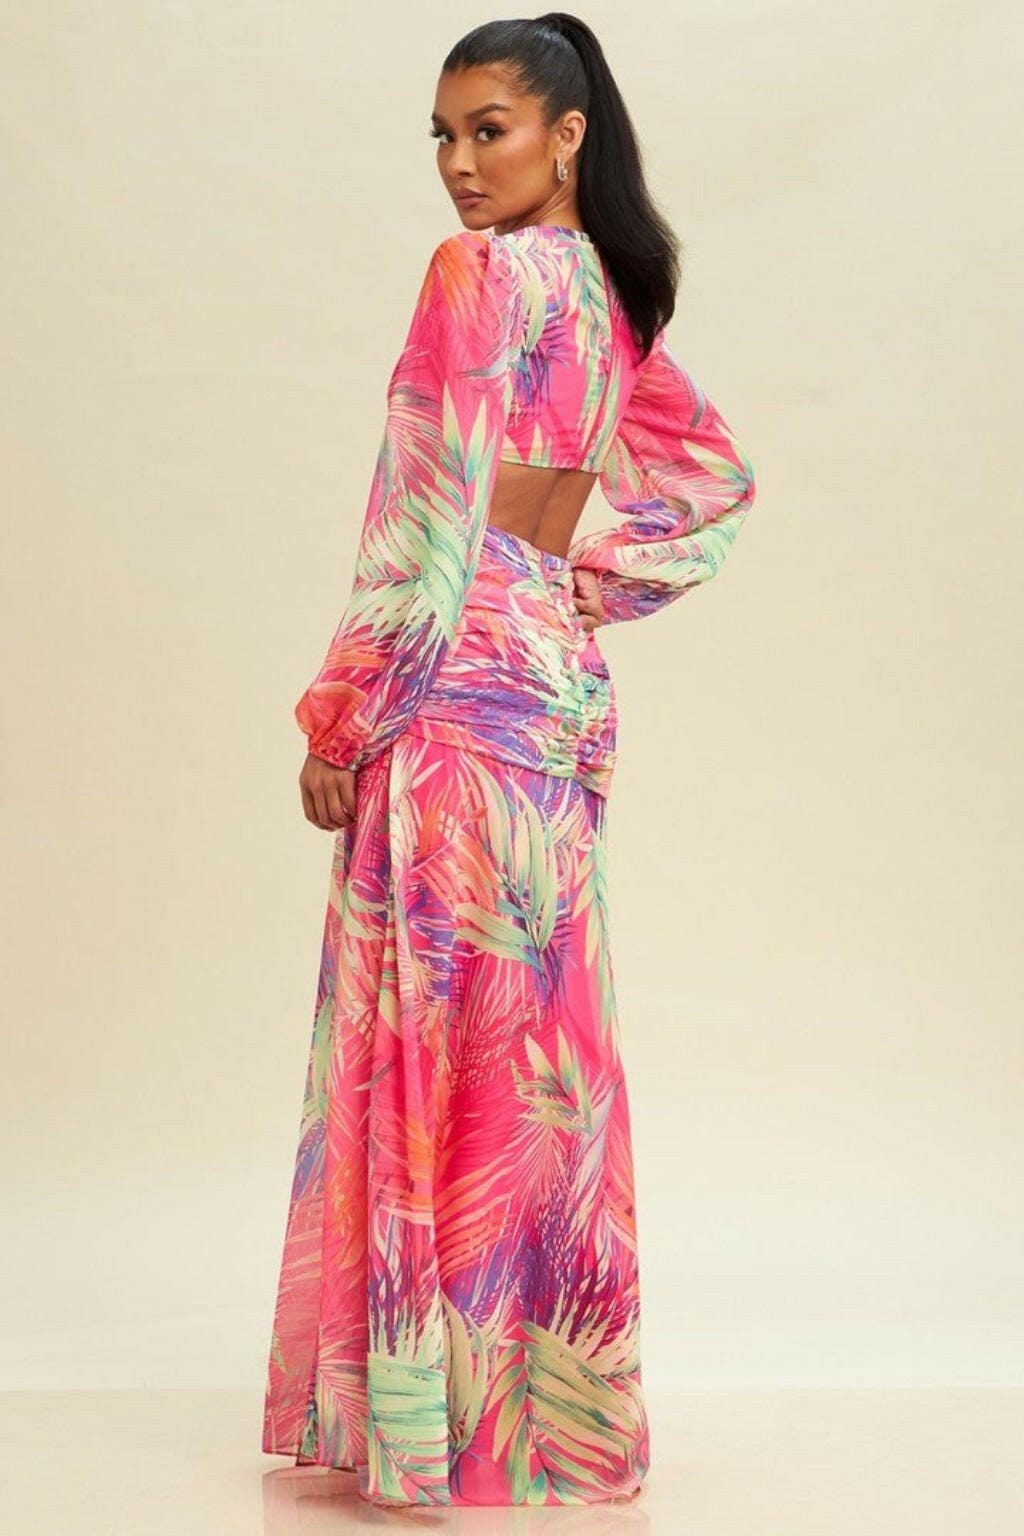 Epicplacess Dress S / Pink Sunrise Chiffon Floral Maxi Dress - Pink LD10383